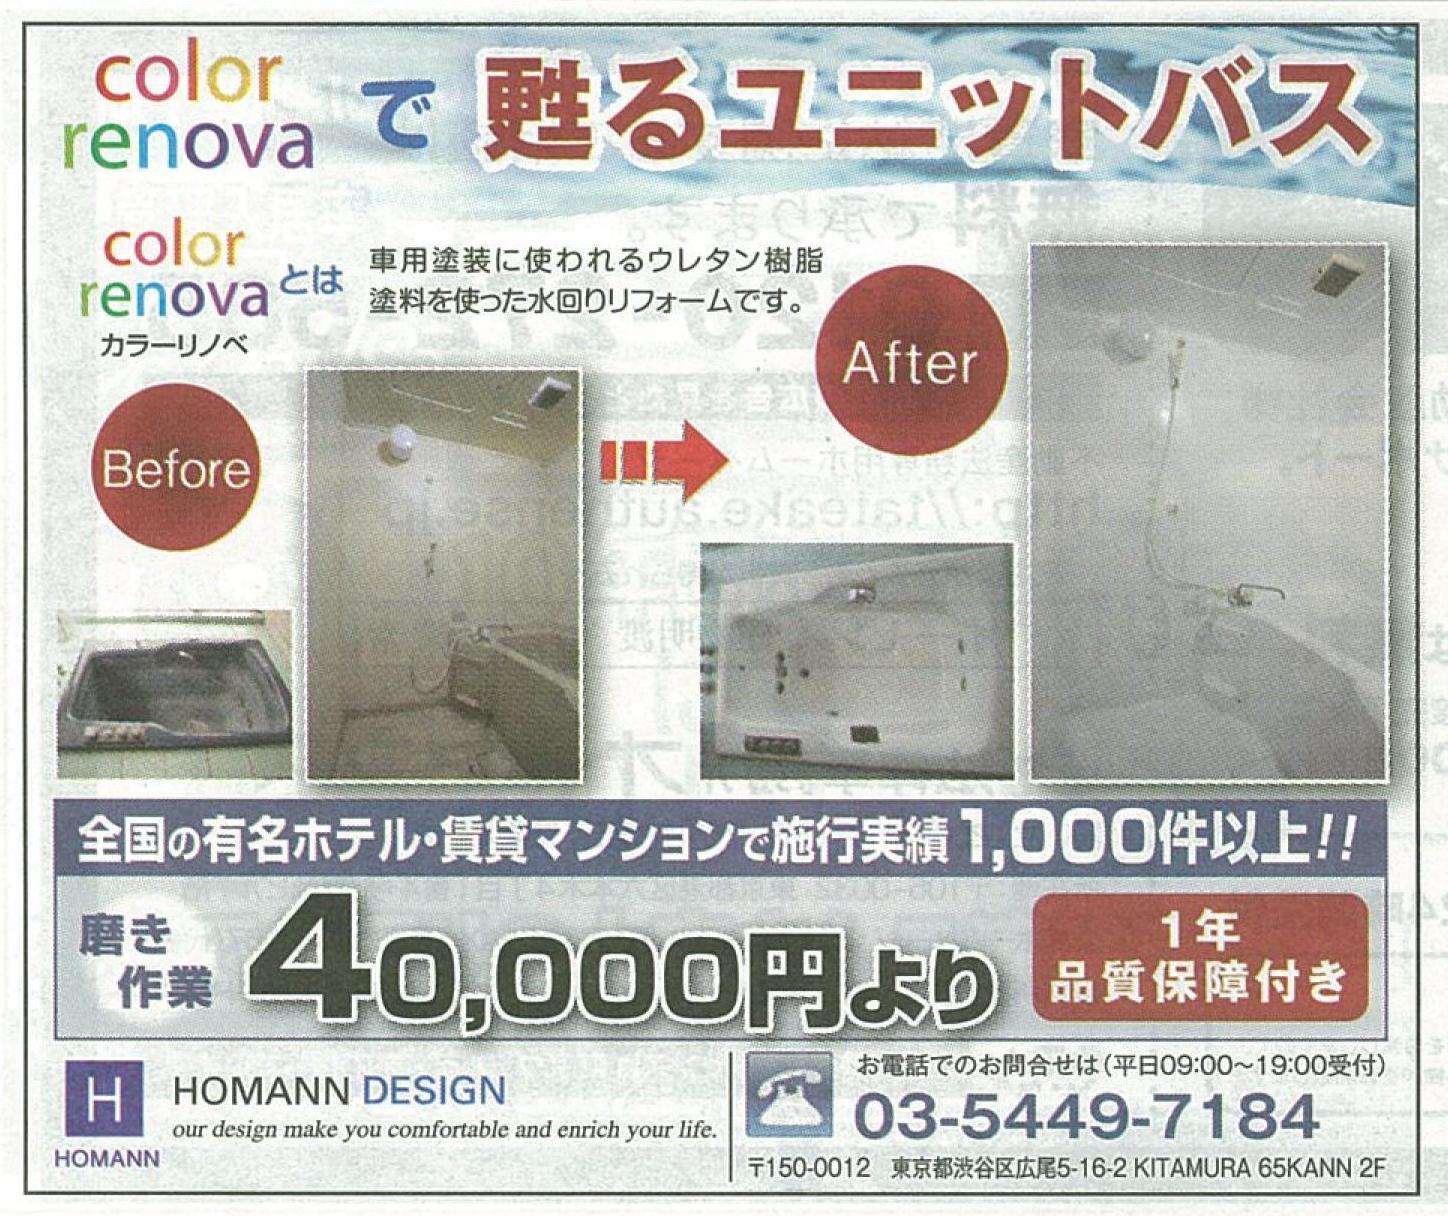 http://www.homann-design.jp/news/colorrinova0827chintai-ad.jpg